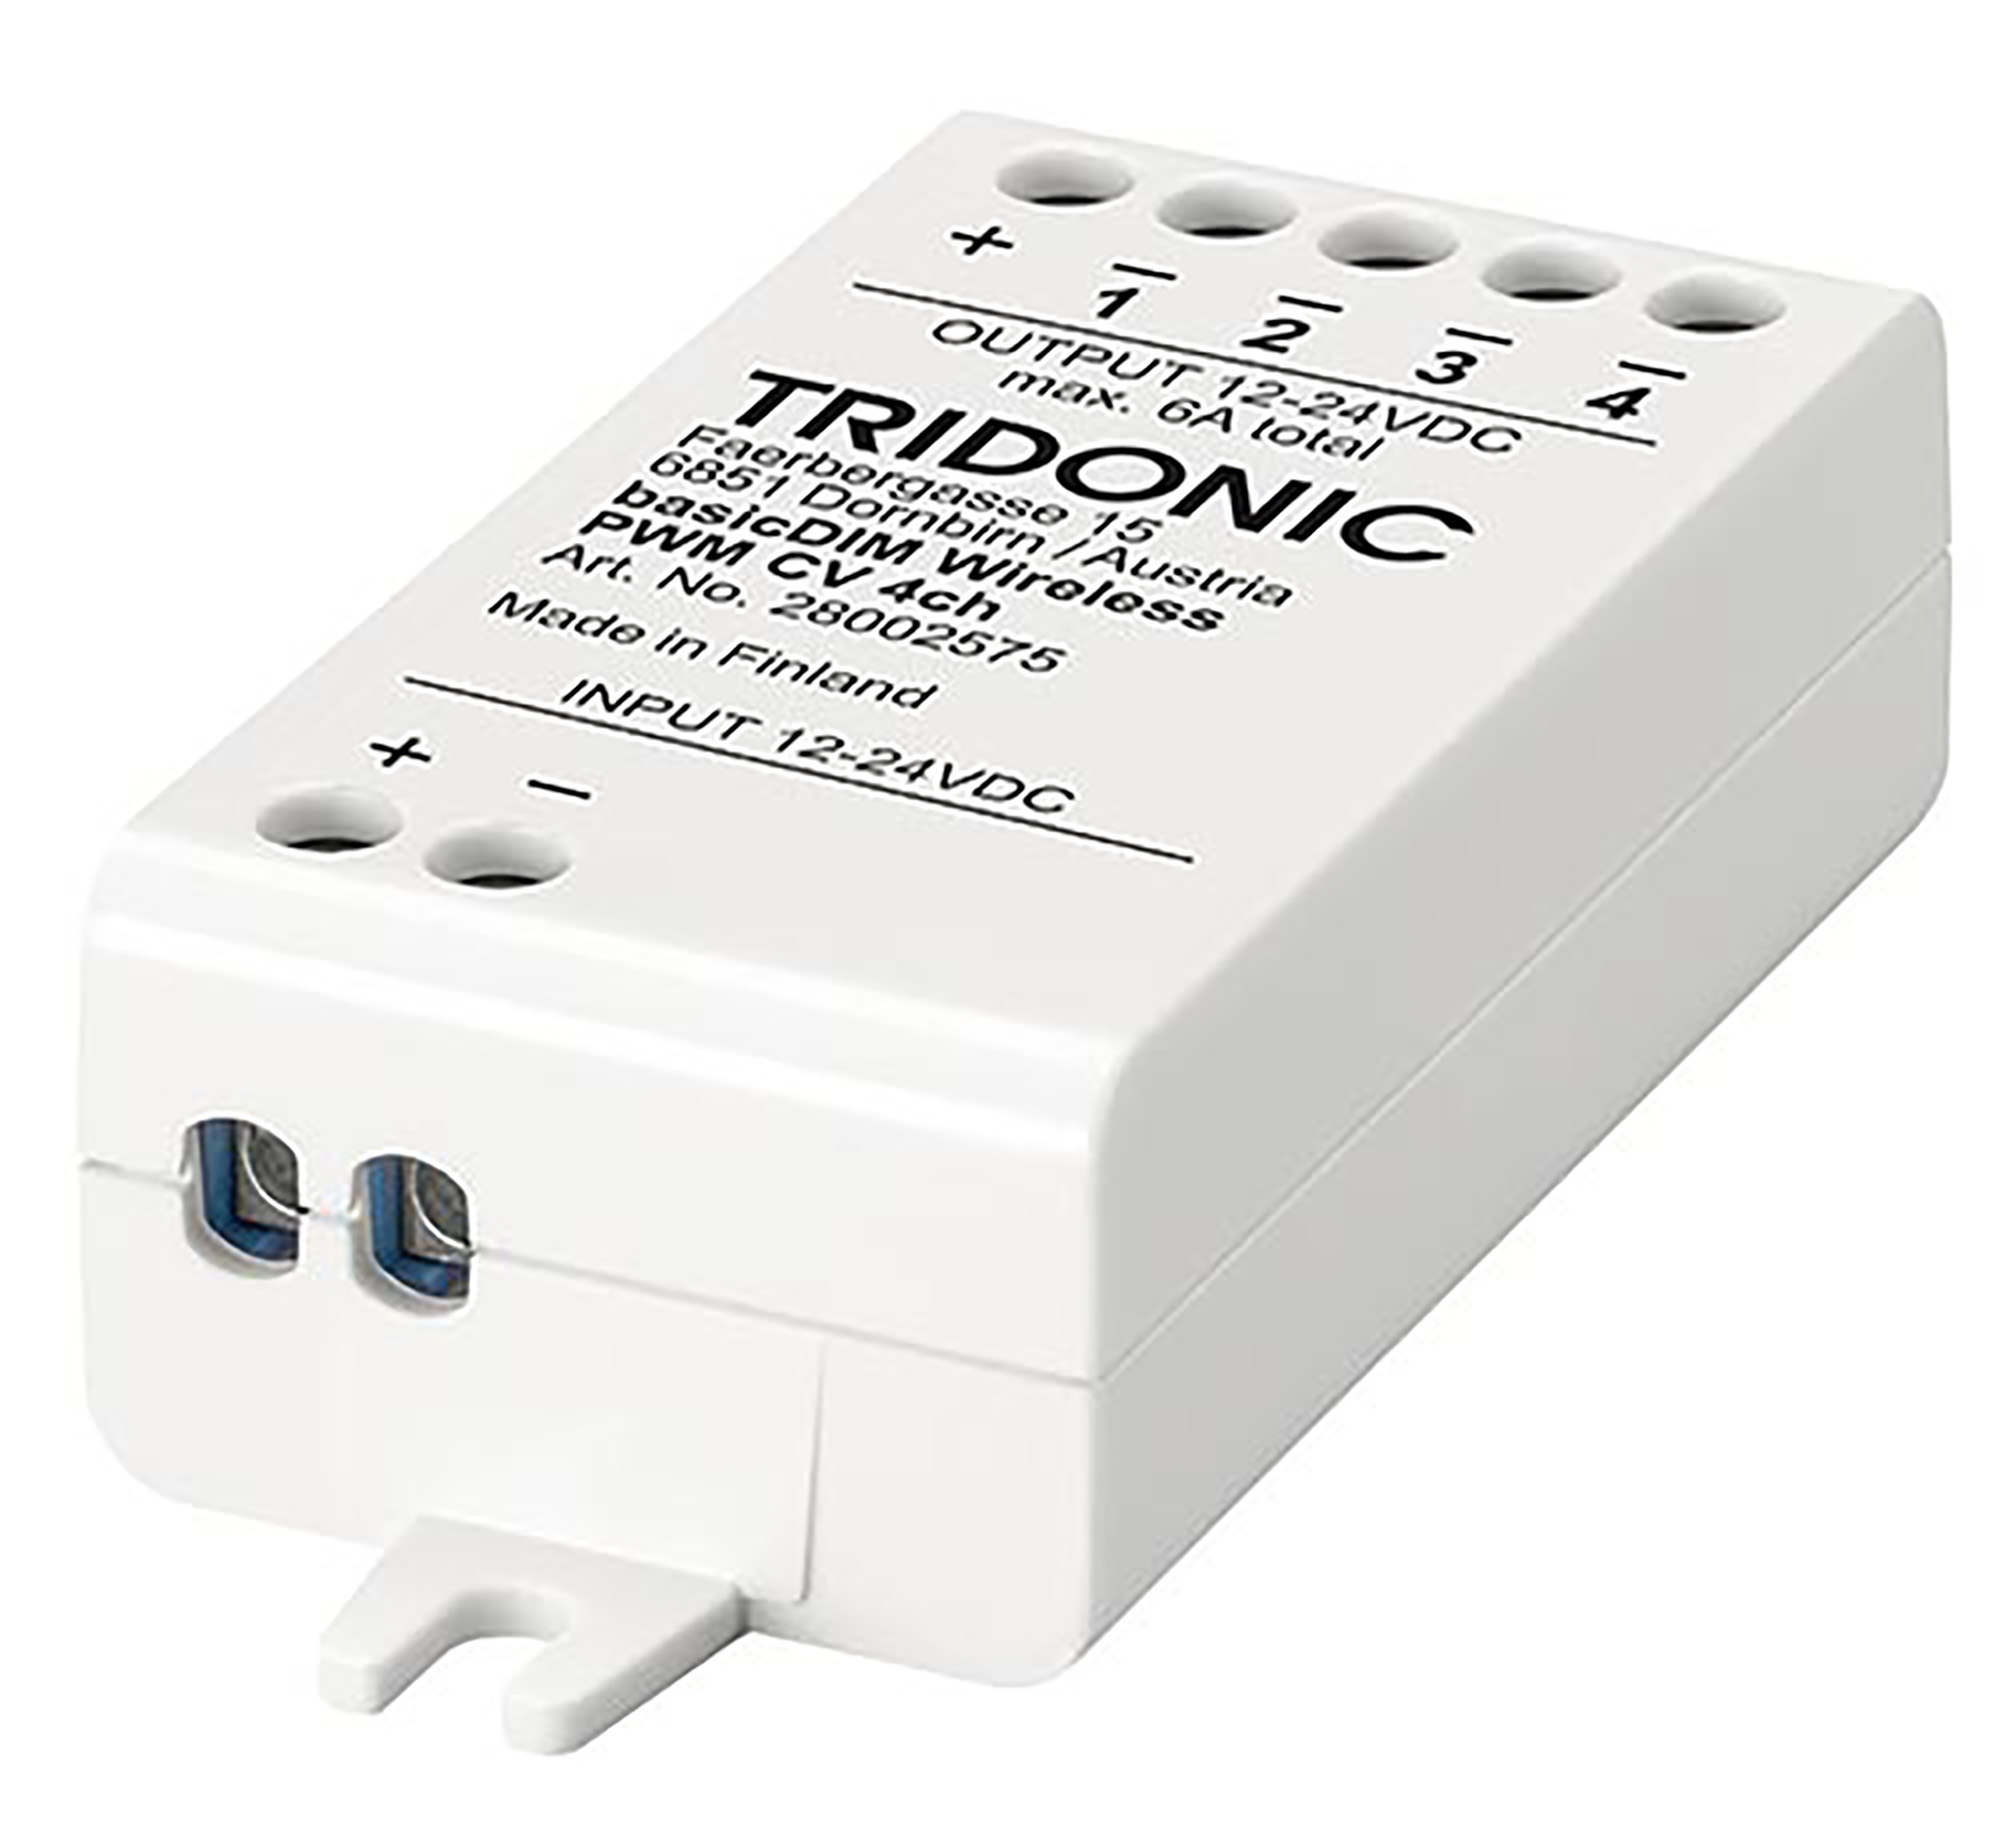 28002575  Tridonic; basicDIM Wireless PWM CV 4C Channel; 5yrs Warranty